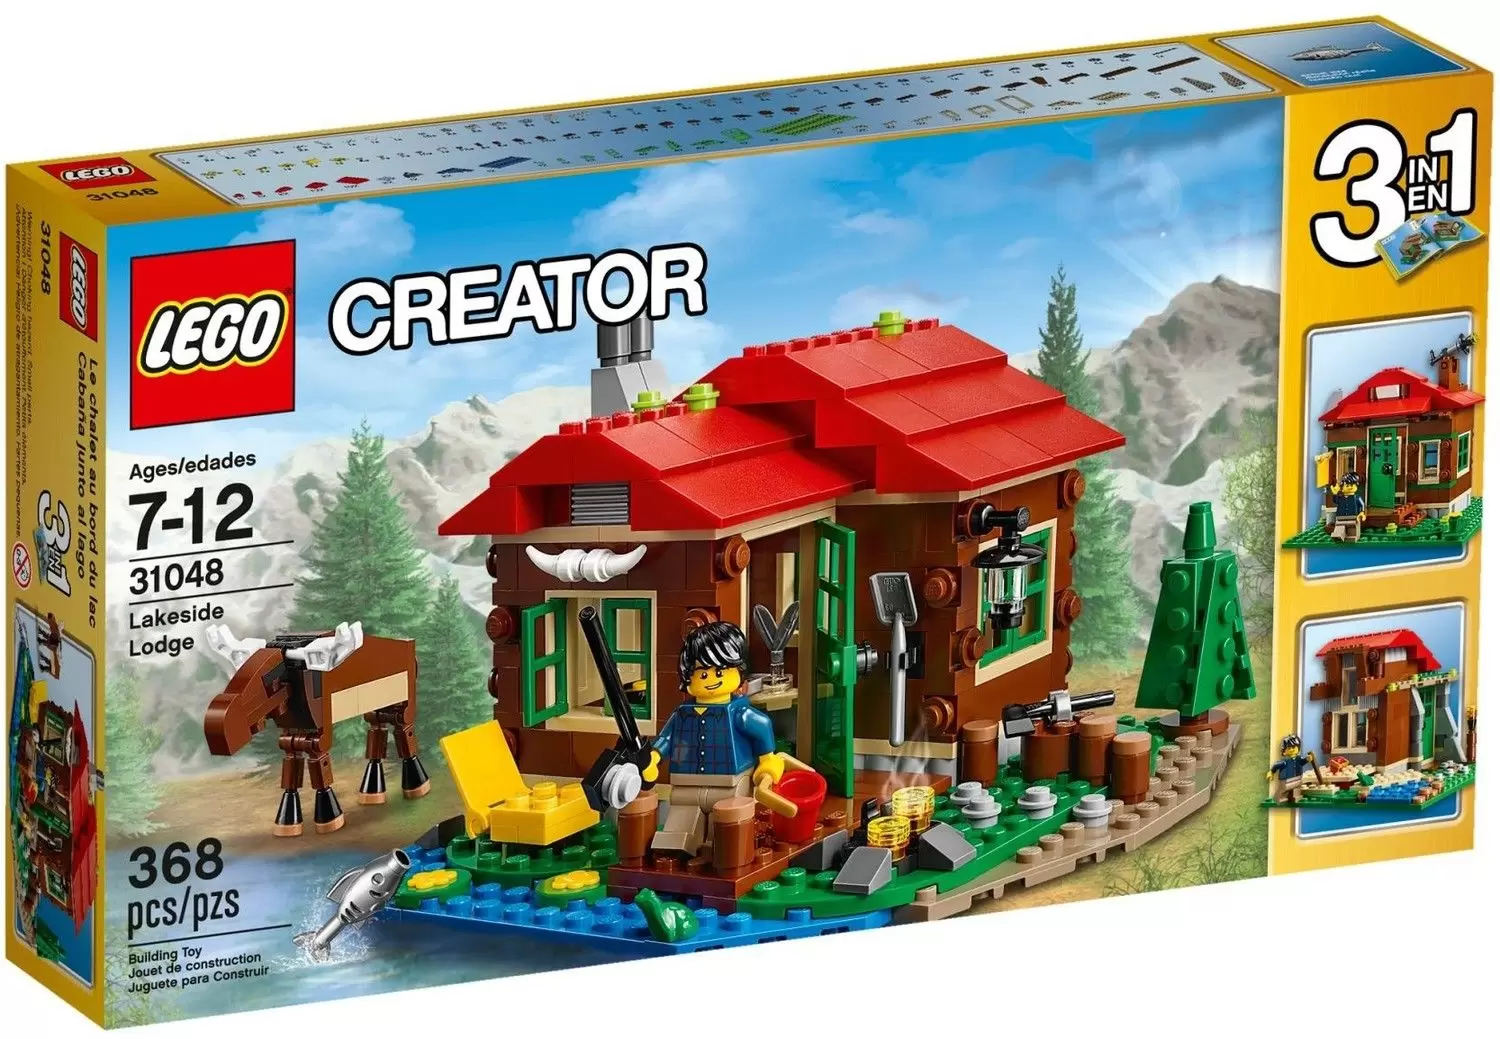 LEGO Creator - Lakeside Lodge